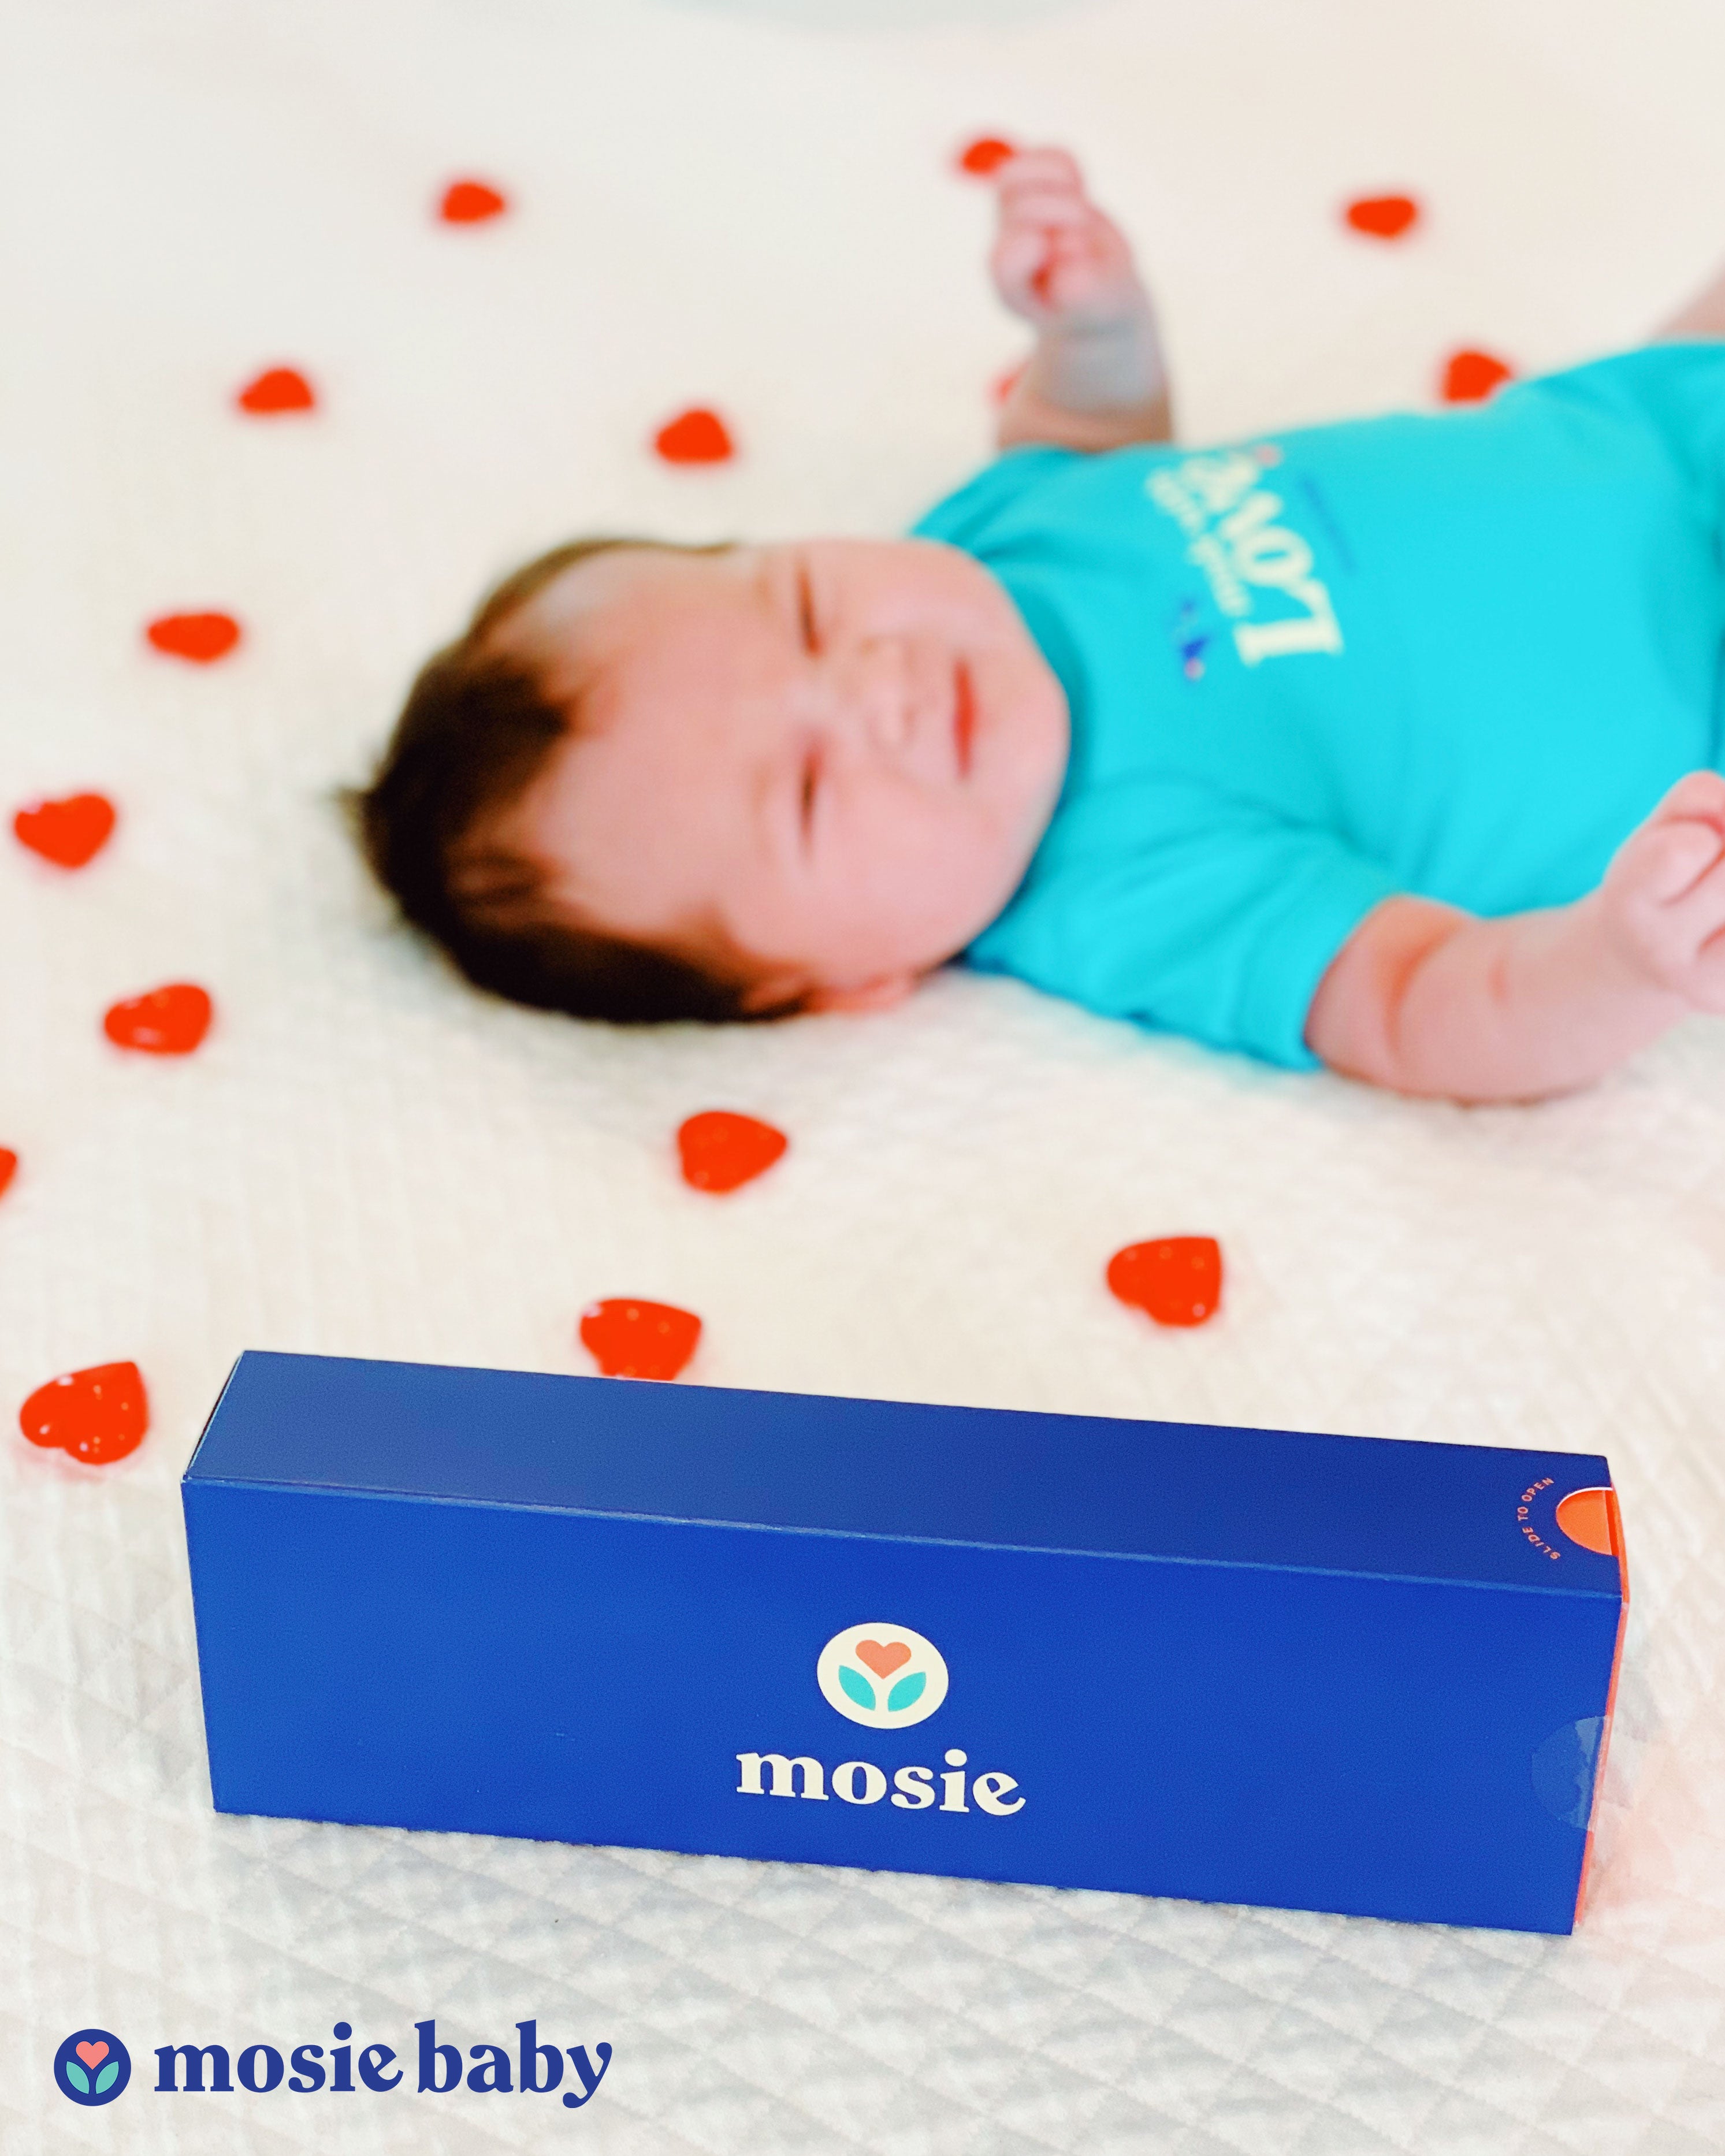 Mosie Baby in Mosie Onesie with the Mosie Kit